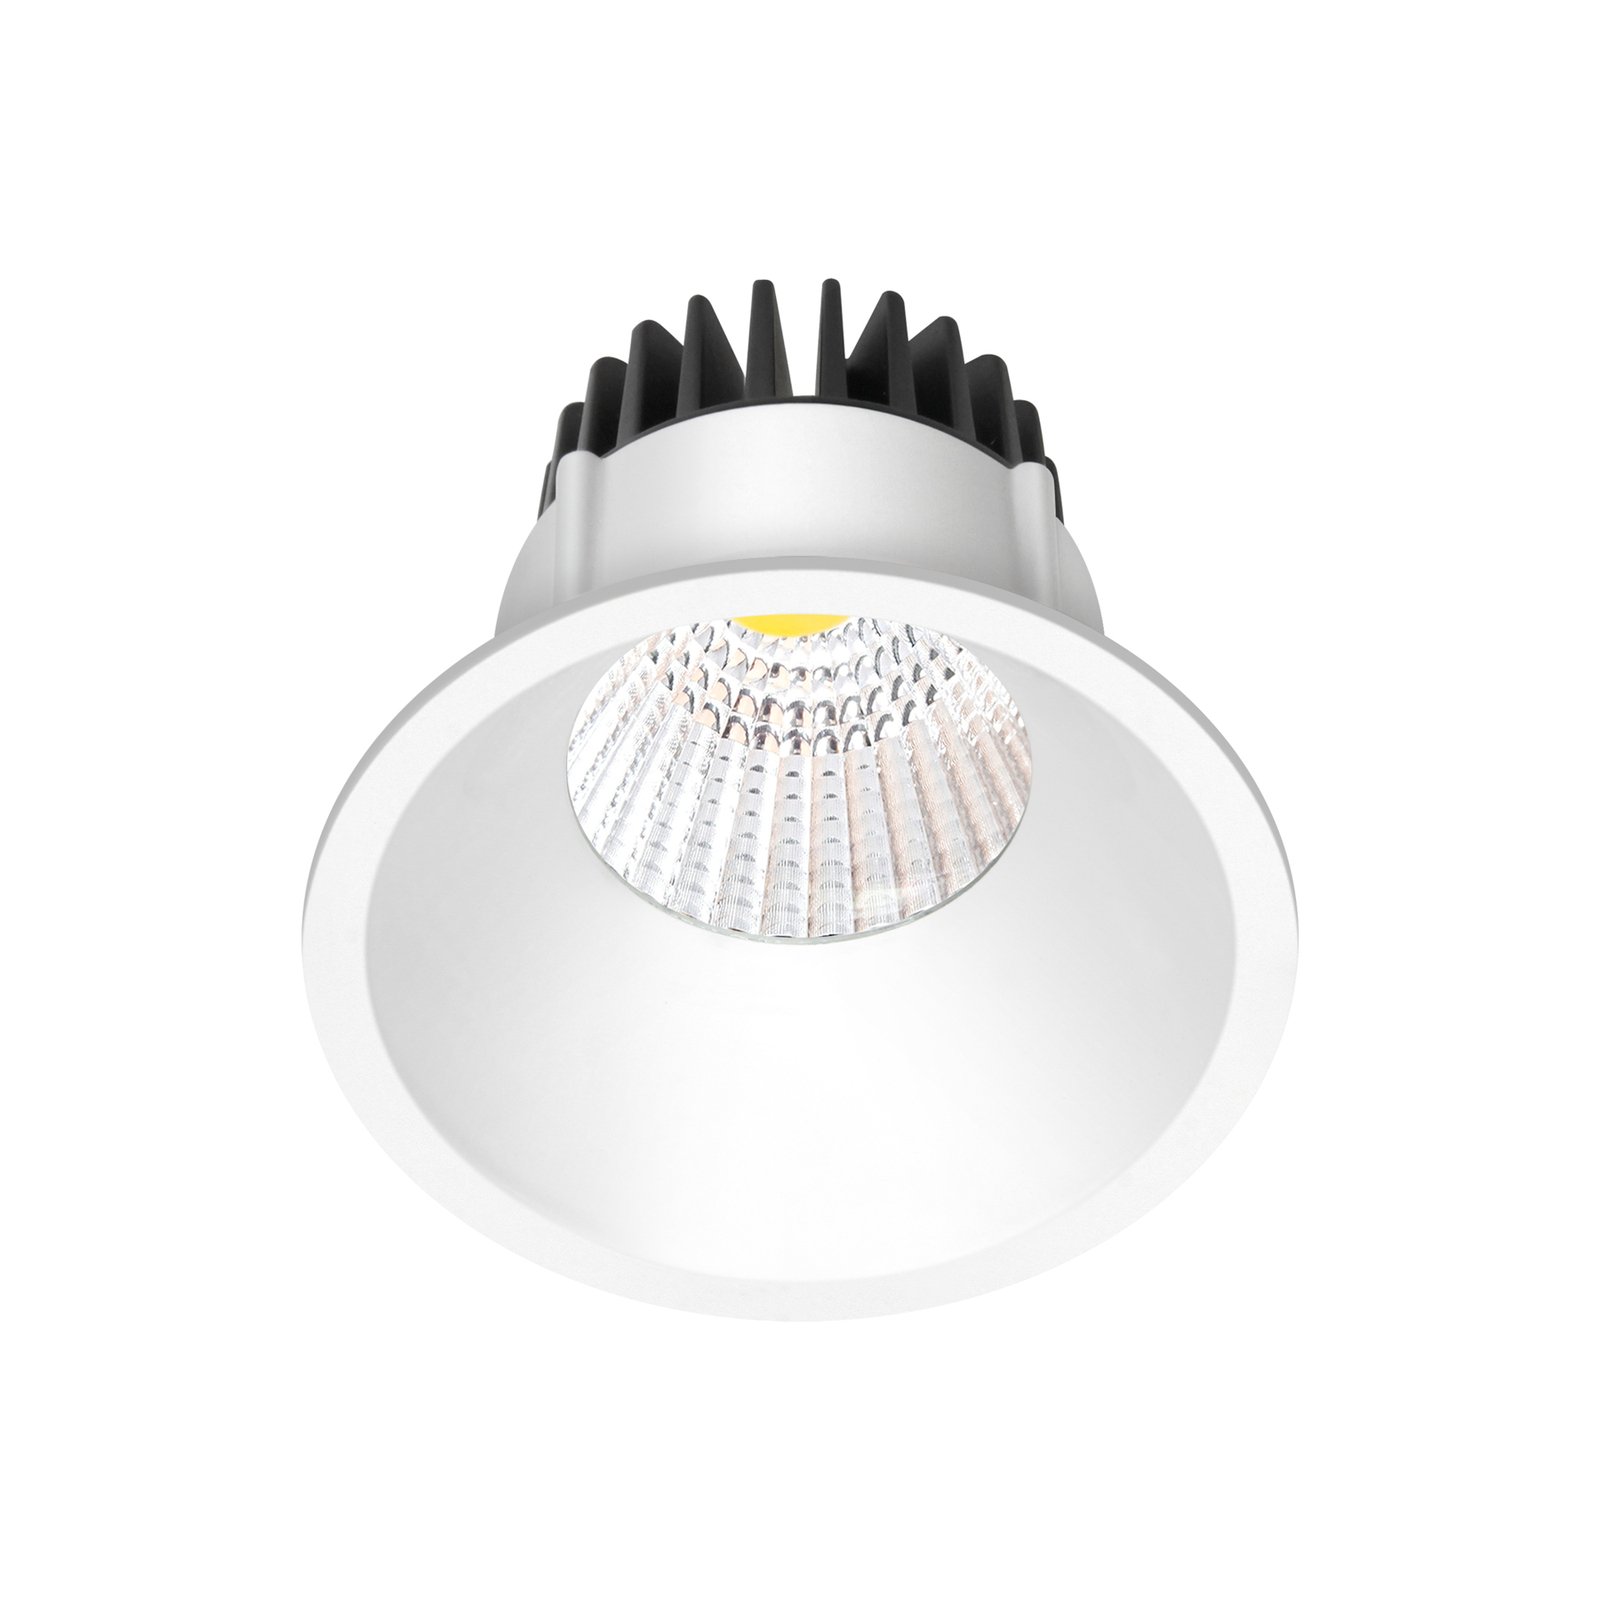 Arcchio LED downlight Niria, white, 2,700K